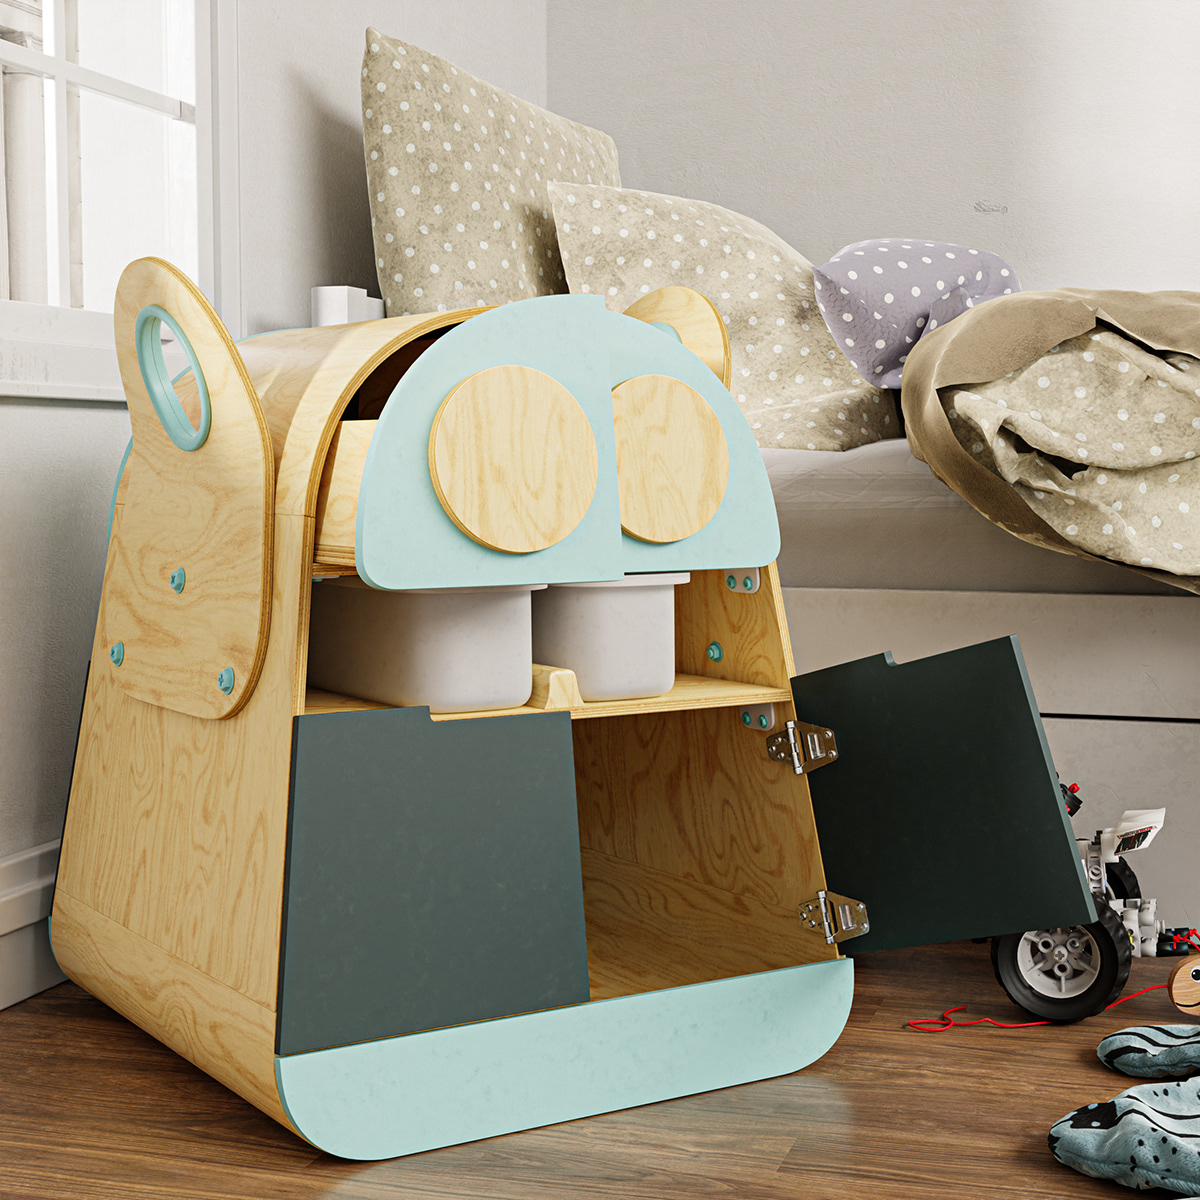 children furniture industrial design  kids organizer product toy